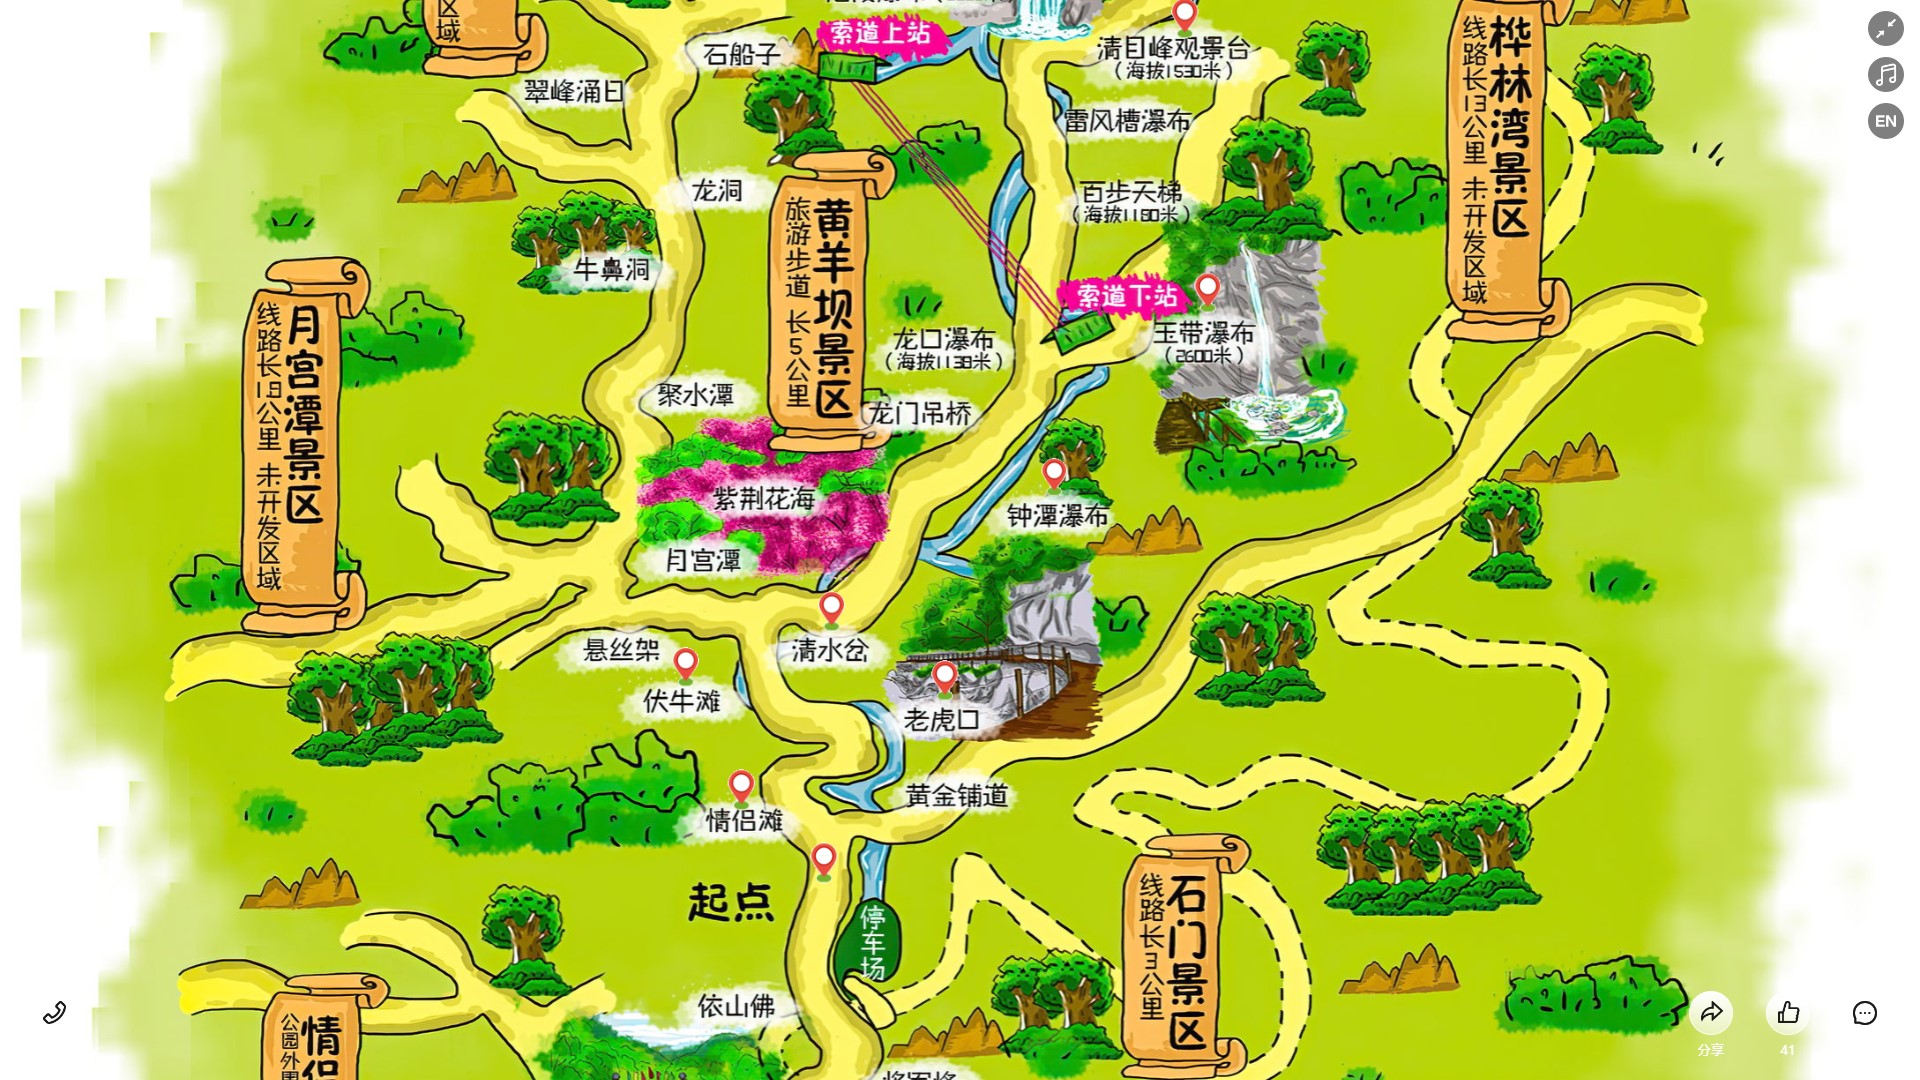 陆川景区导览系统